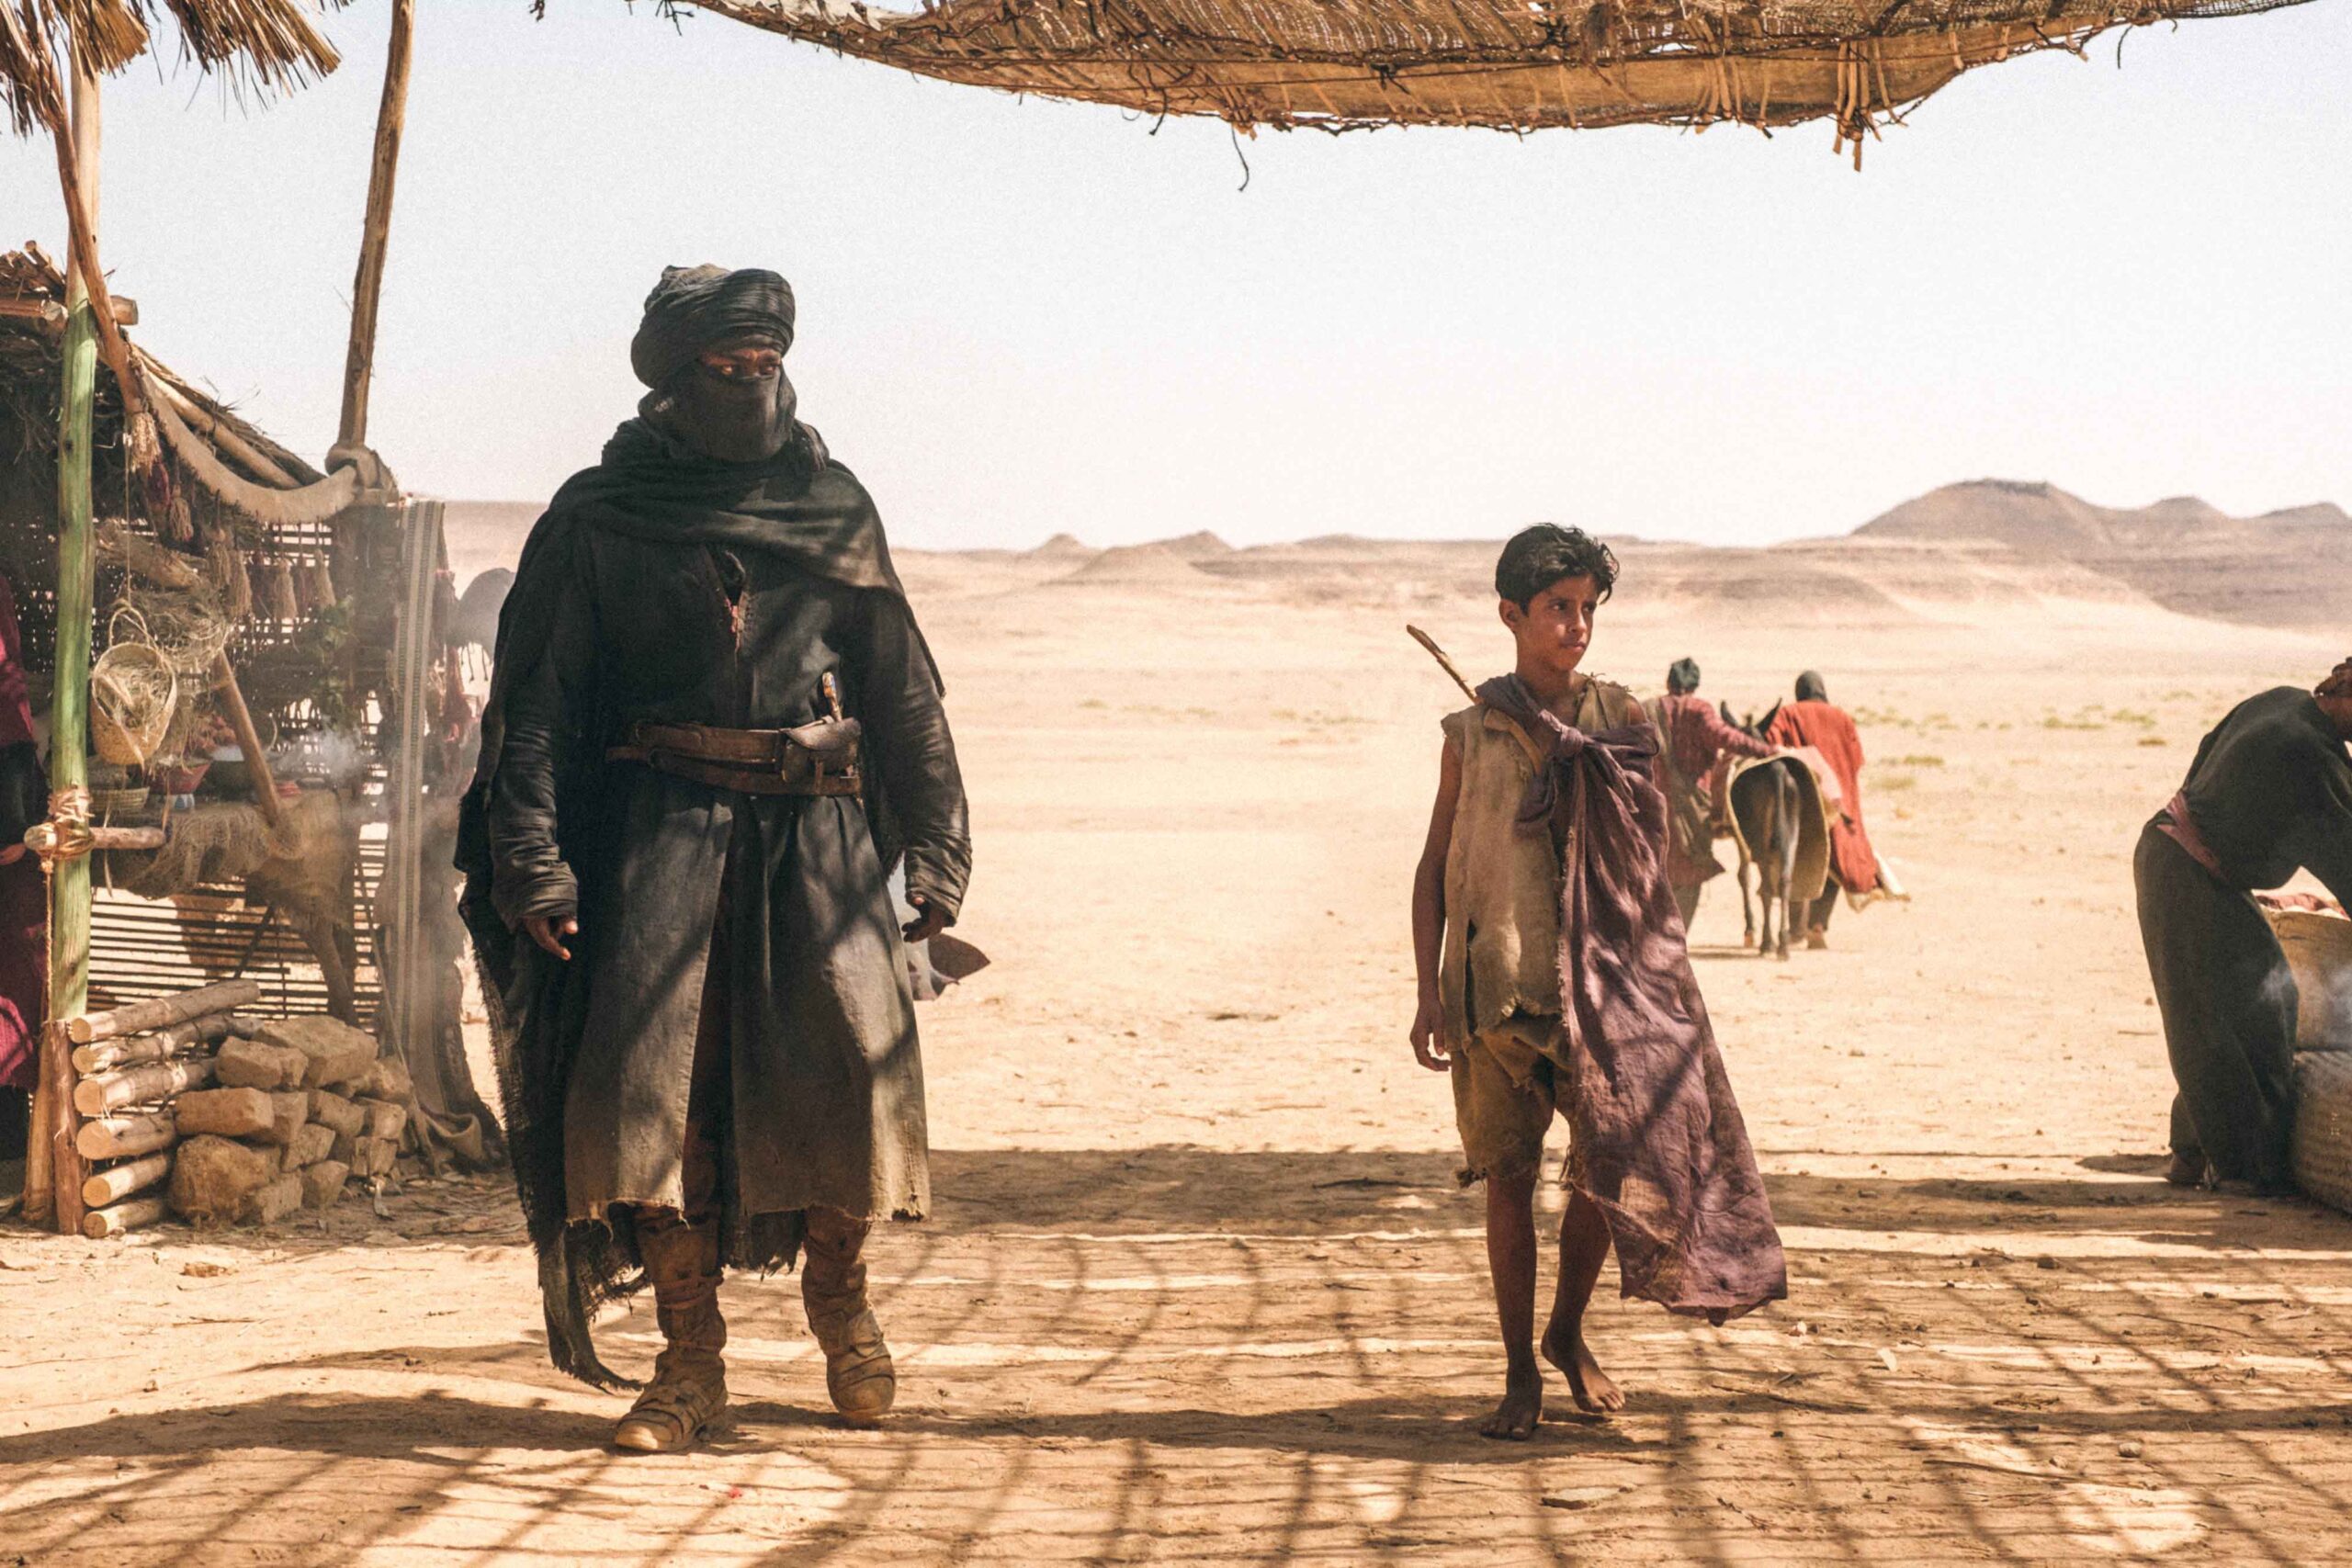 فیلم جنگجوی صحرا عربستان